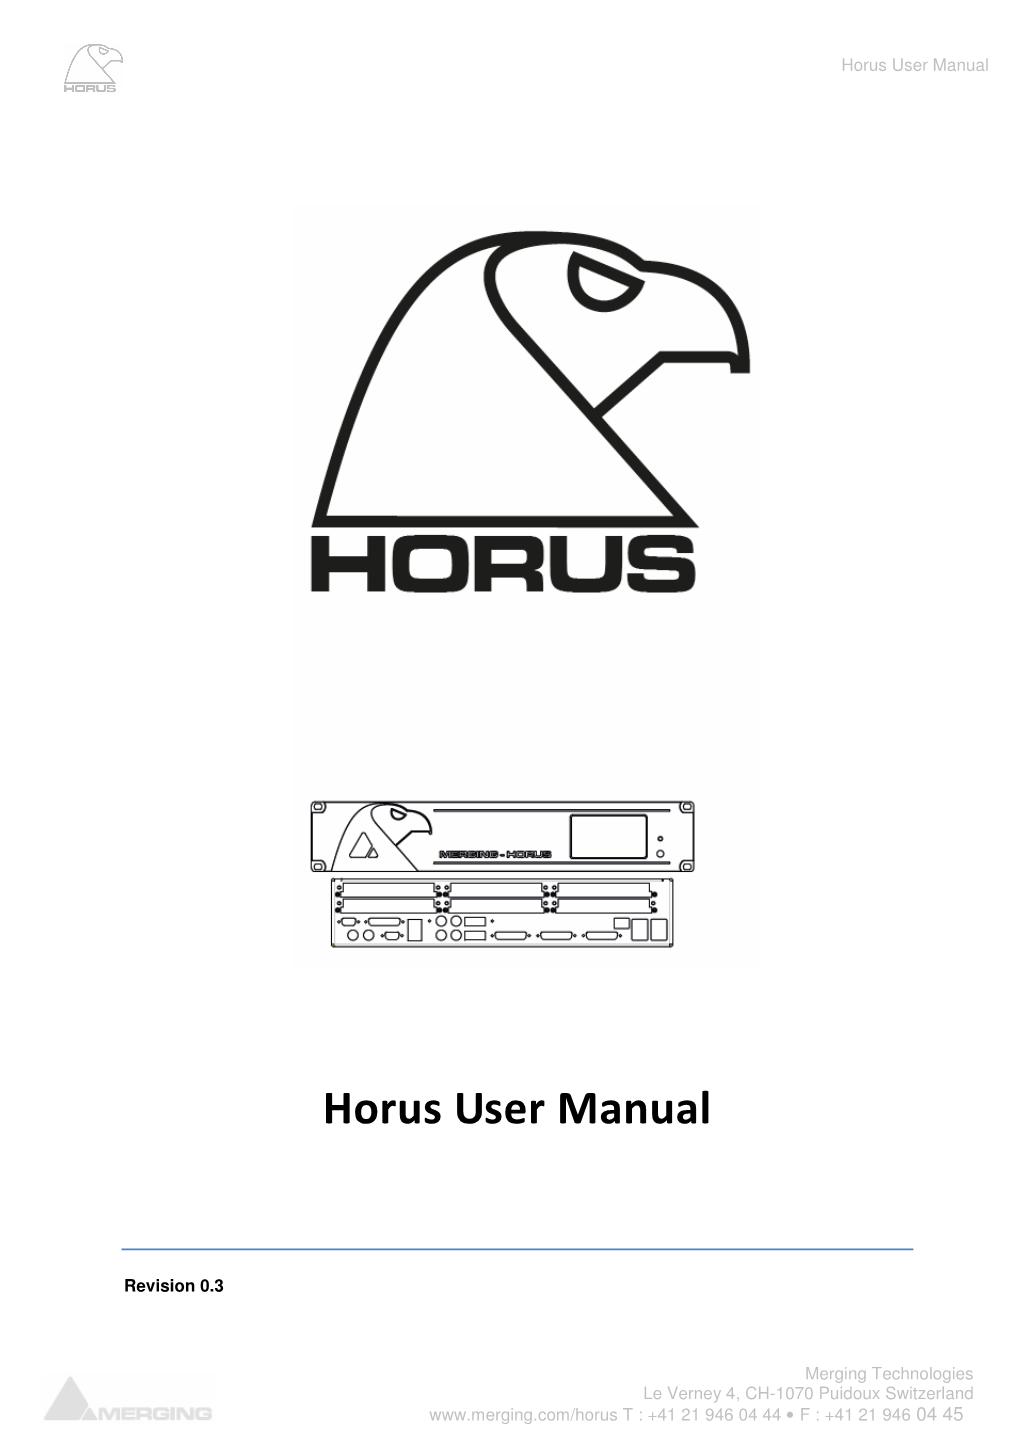 Horus User Manual